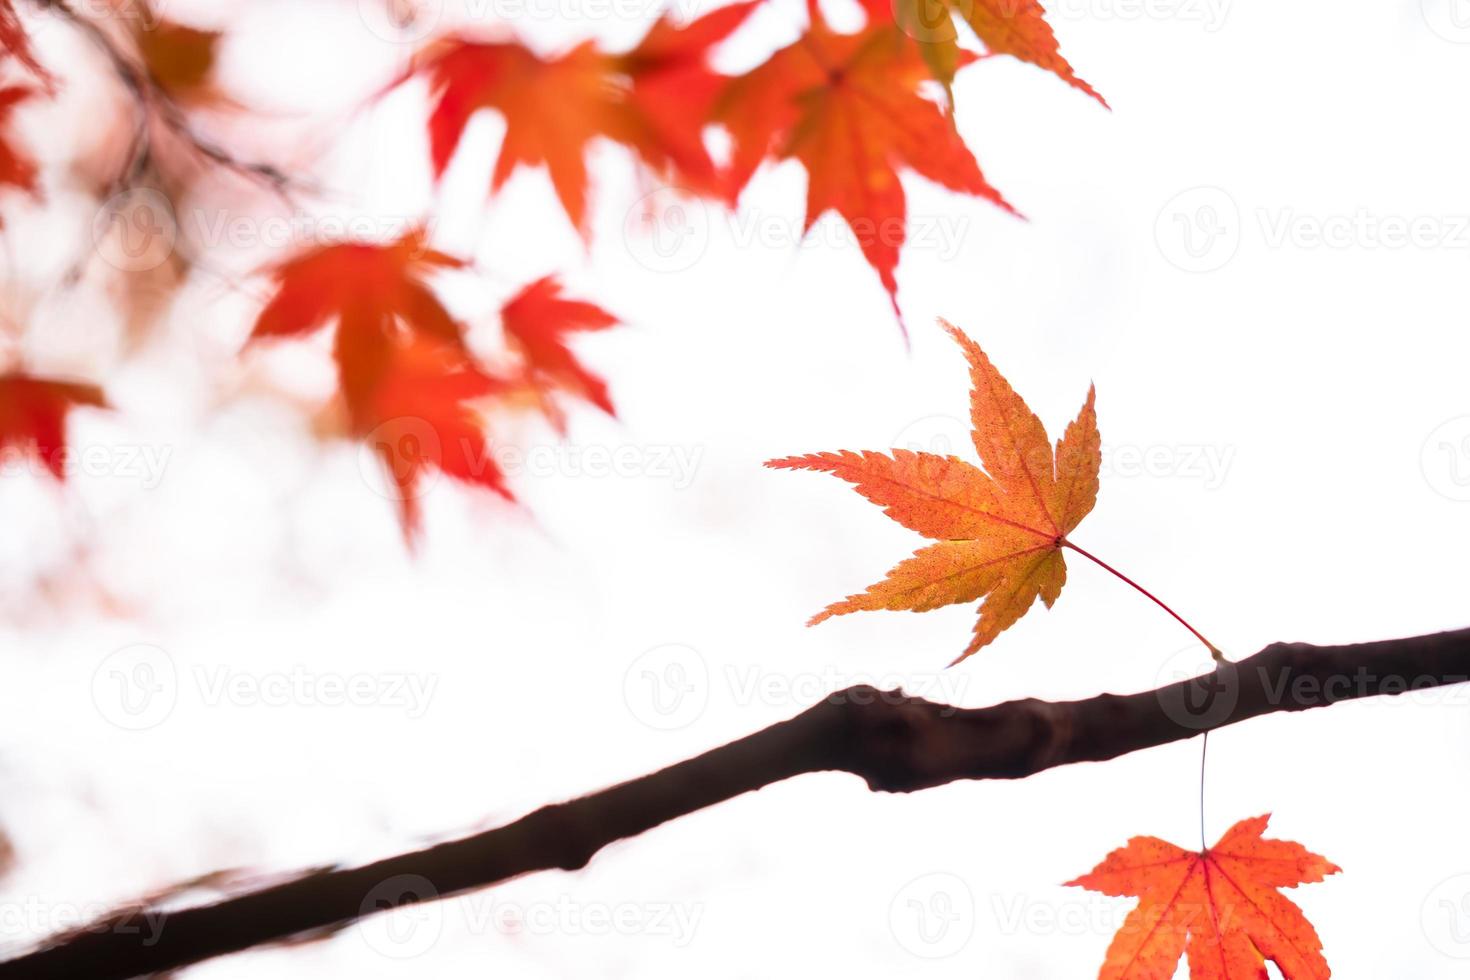 belles feuilles d'érable d'automne dans la nature, feuillage d'automne photo